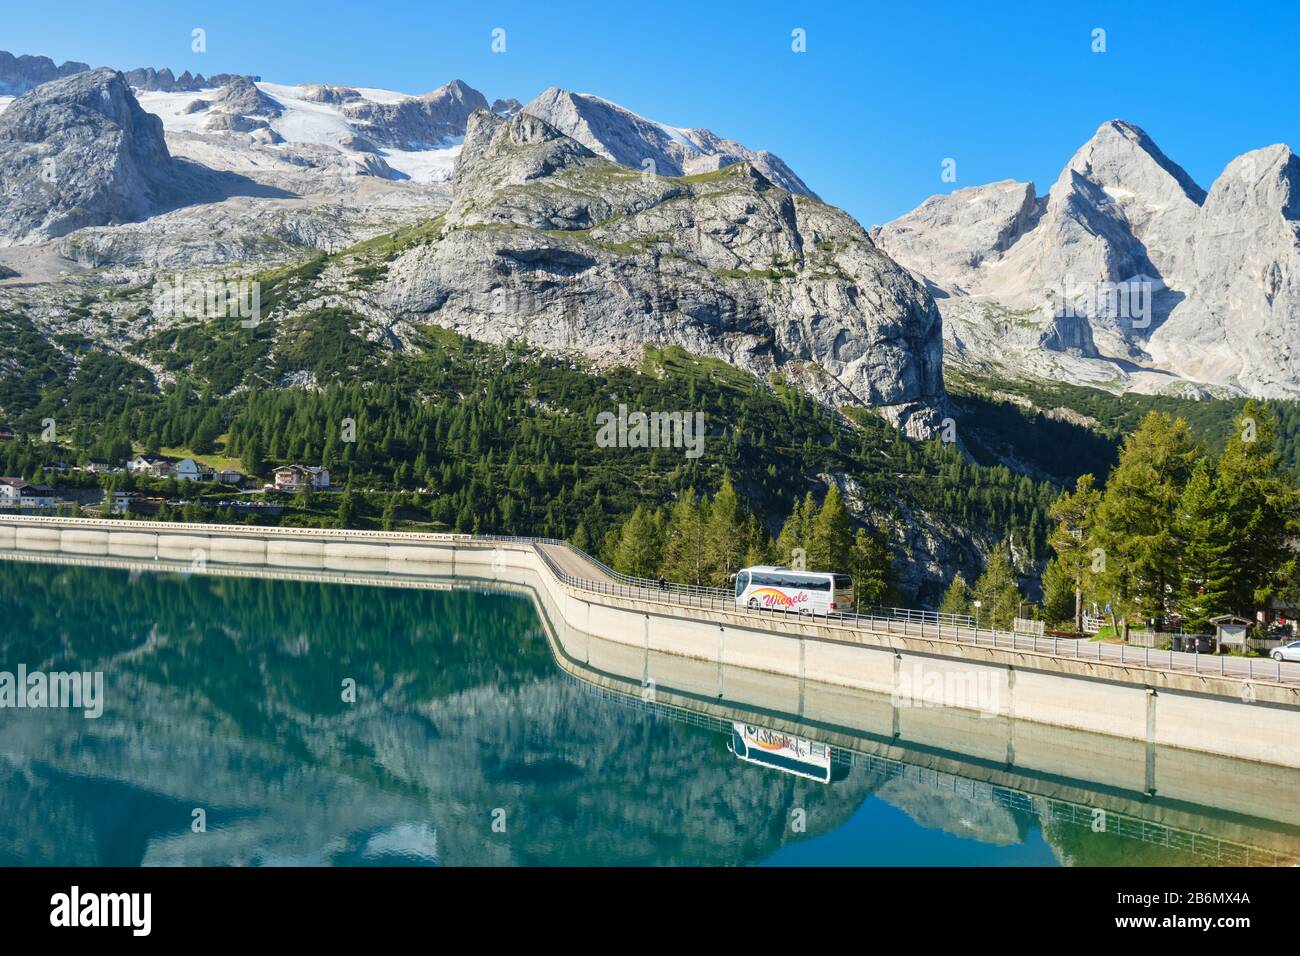 Lago di Fedaia, Italia - 27 agosto 2019: Autobus sulla diga del lago di Fedaia, riflesso nelle acque turchesi, in una giornata luminosa e soleggiata, con il ghiacciaio della Marmolada in Foto Stock